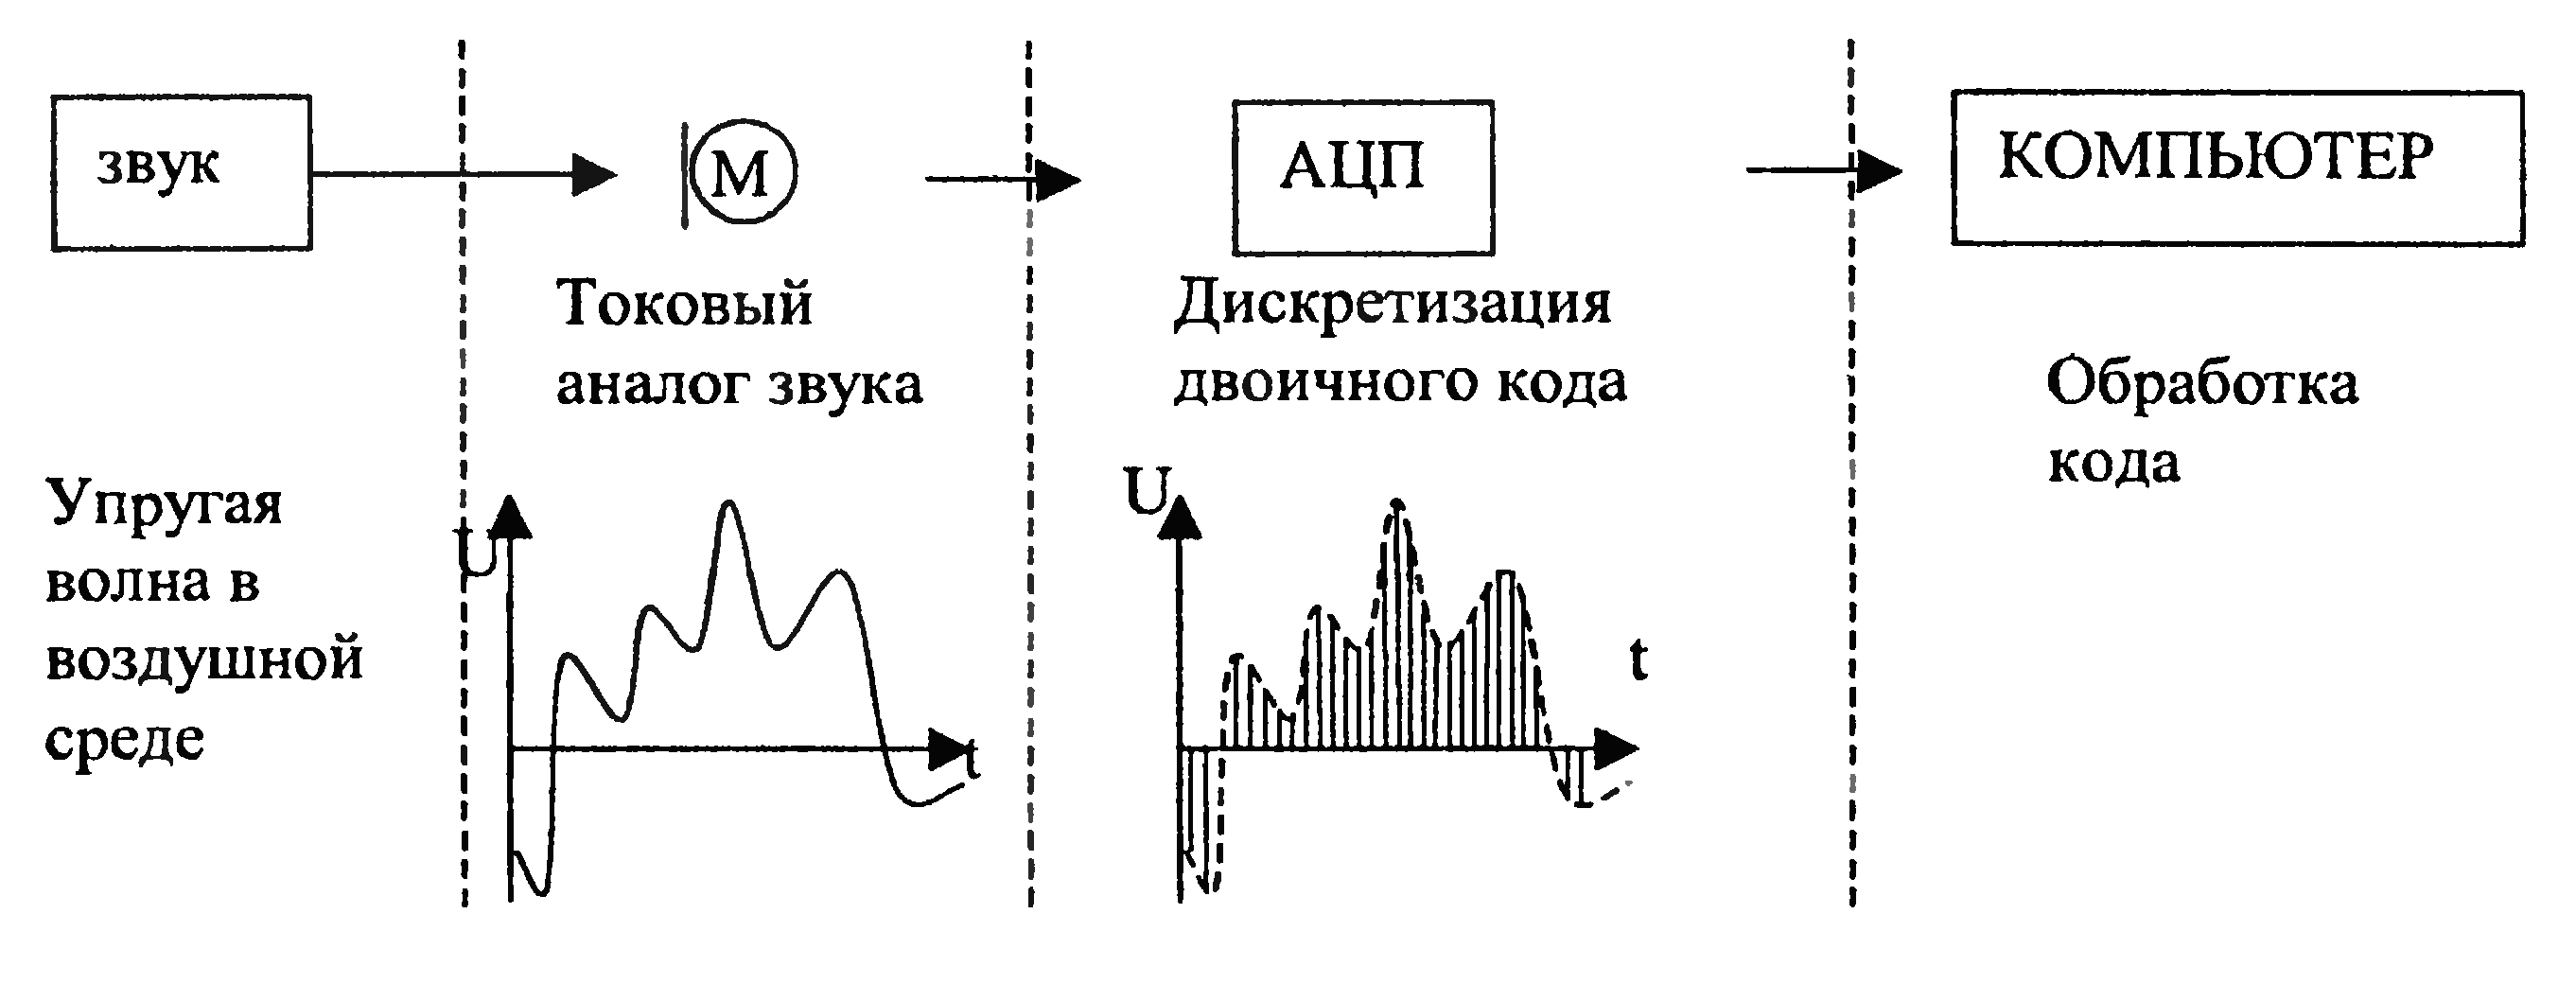 Преобразование звуковых волн. Схема частотной обработки аналоговых сигналов. Кодирование аналогового звукового сигнала. Обработка звука схемы. Представление аналогового сигнала и дискретного схема.